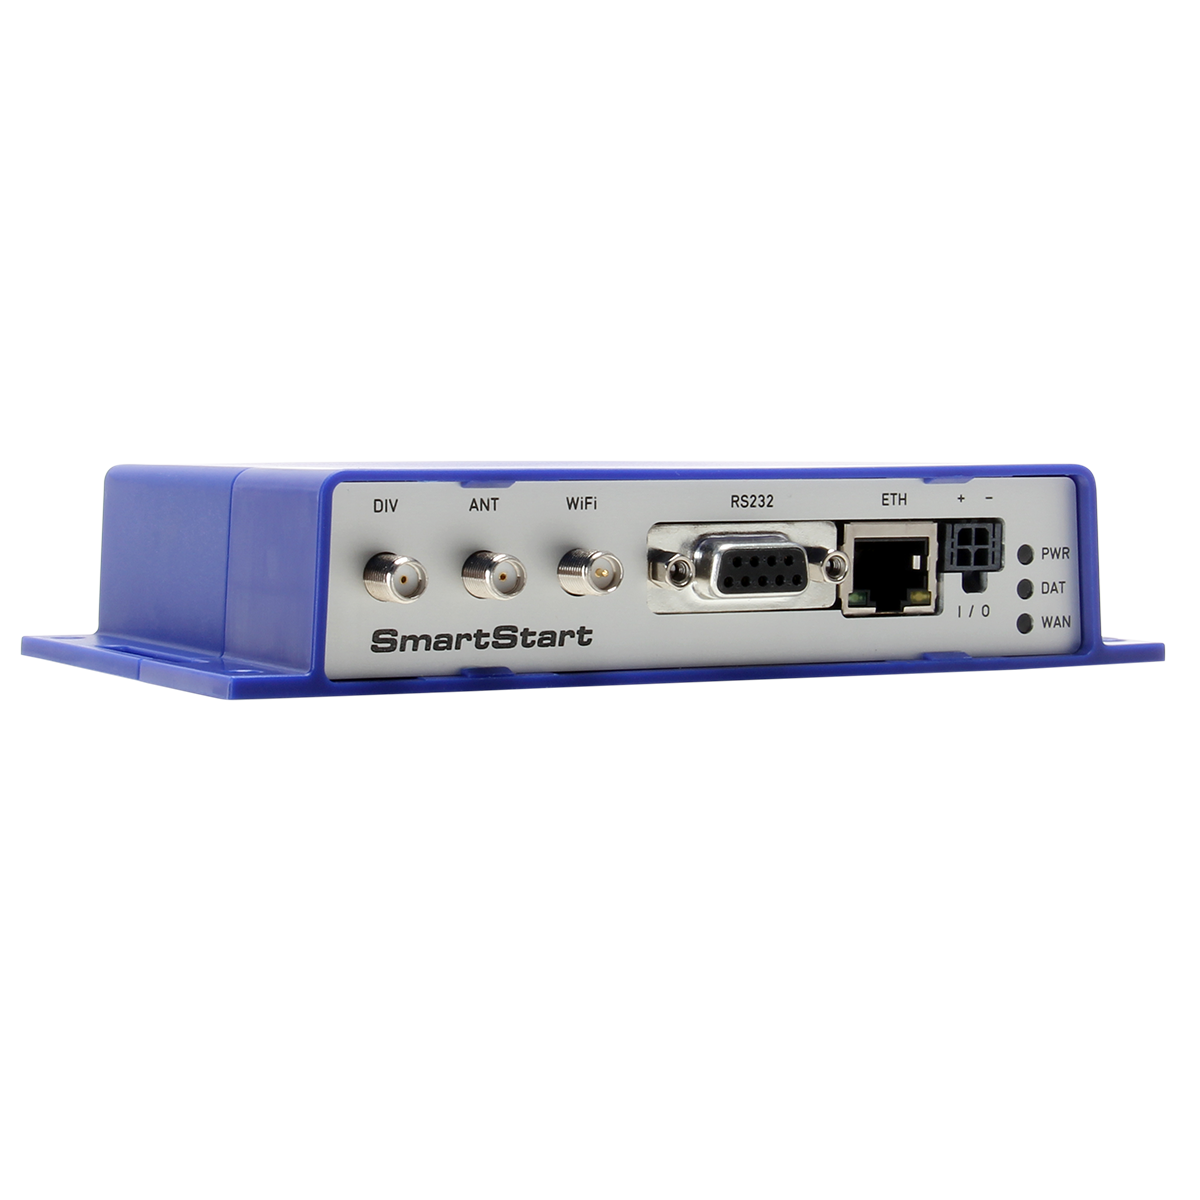 SmartStart 1 Port Ethernet Cellular Router with RS-232, I/O, 2SIM